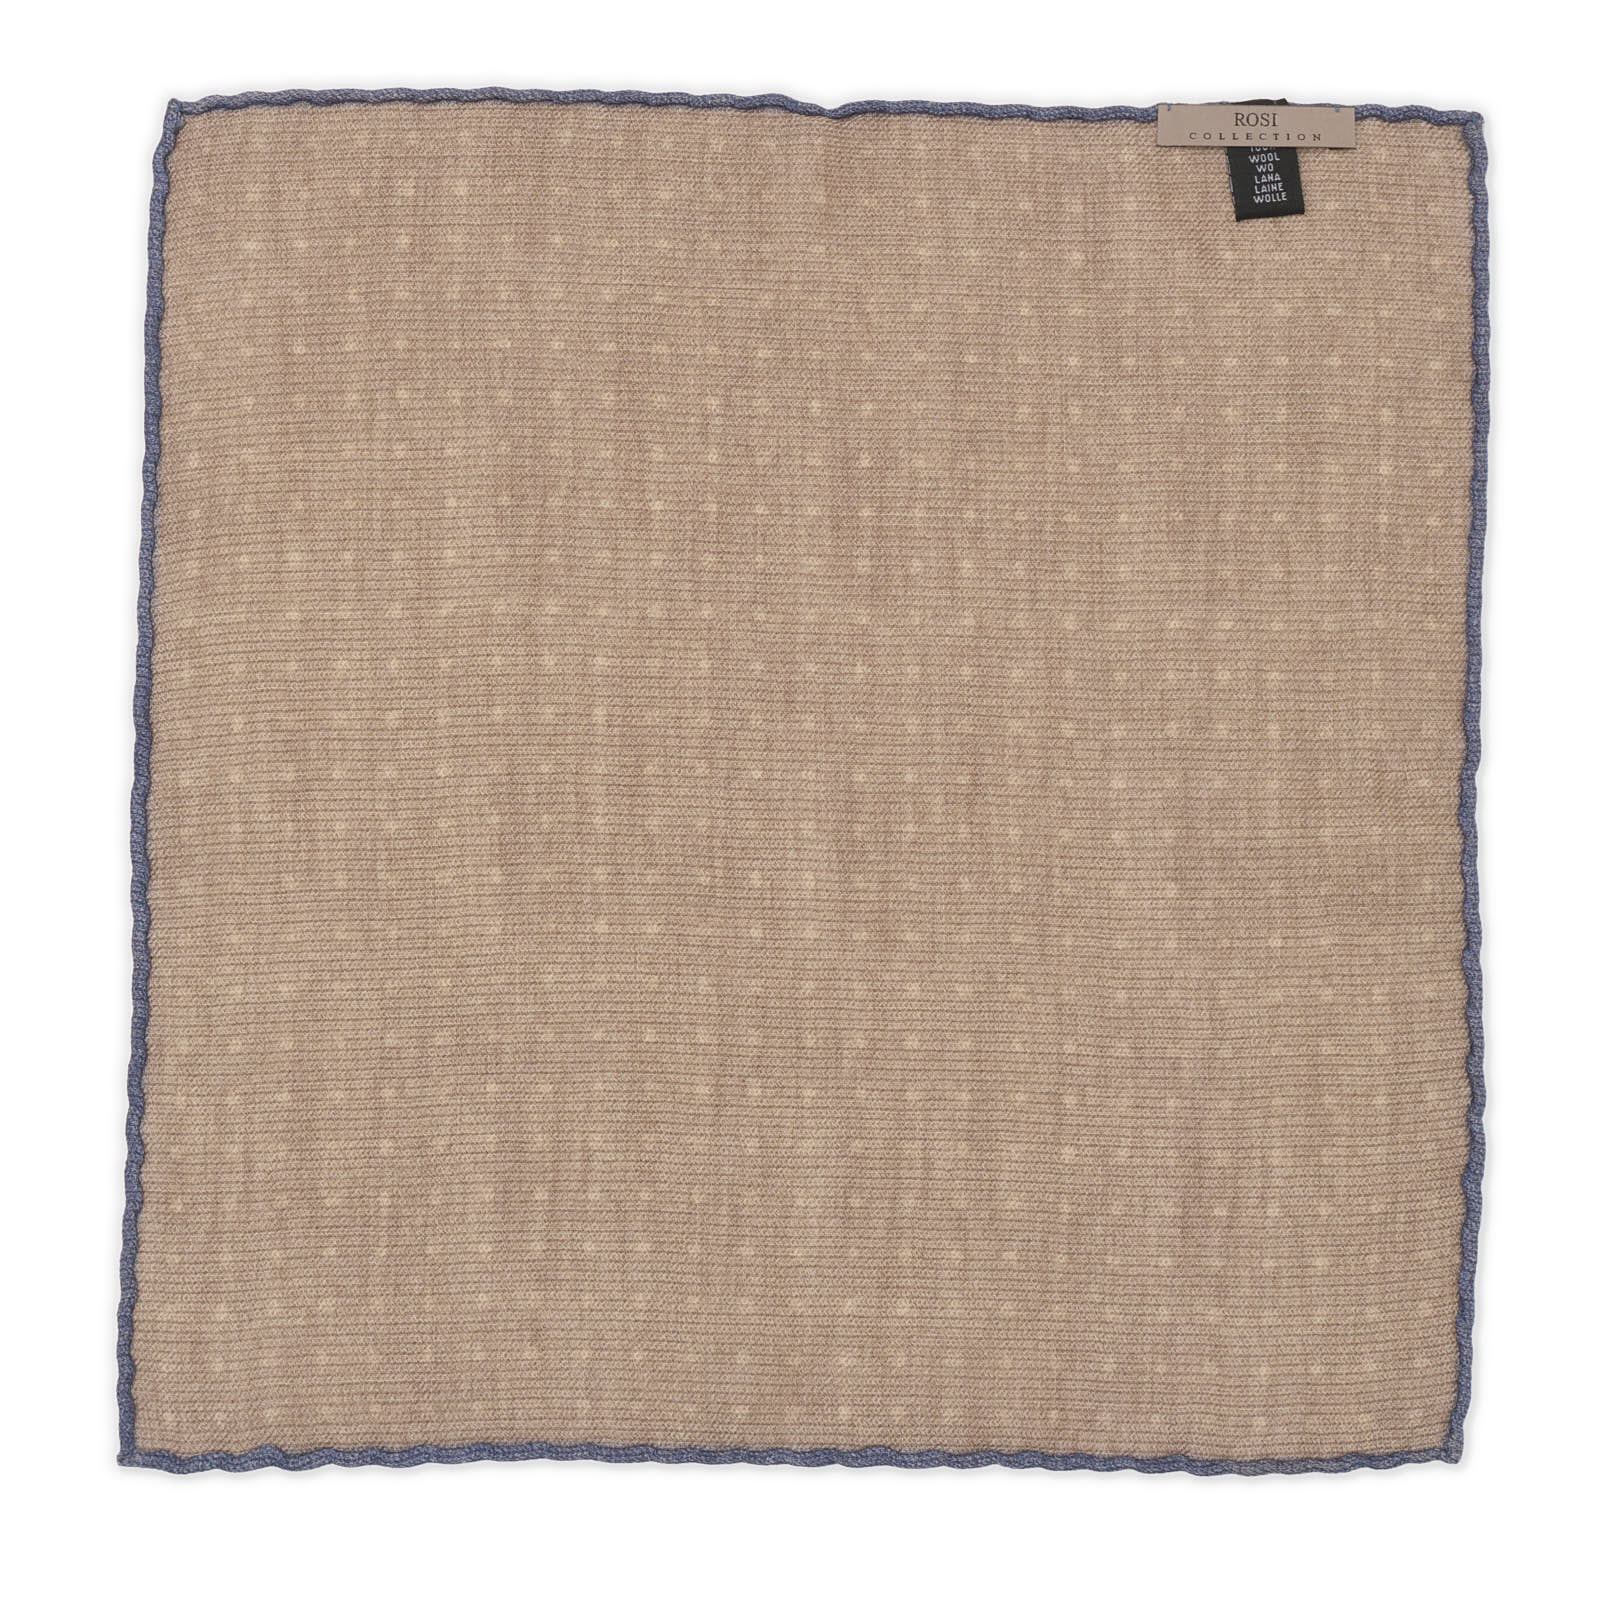 ROSI Handmade Light Brown Dot Wool Pocket Square NEW 30cm x 30cm